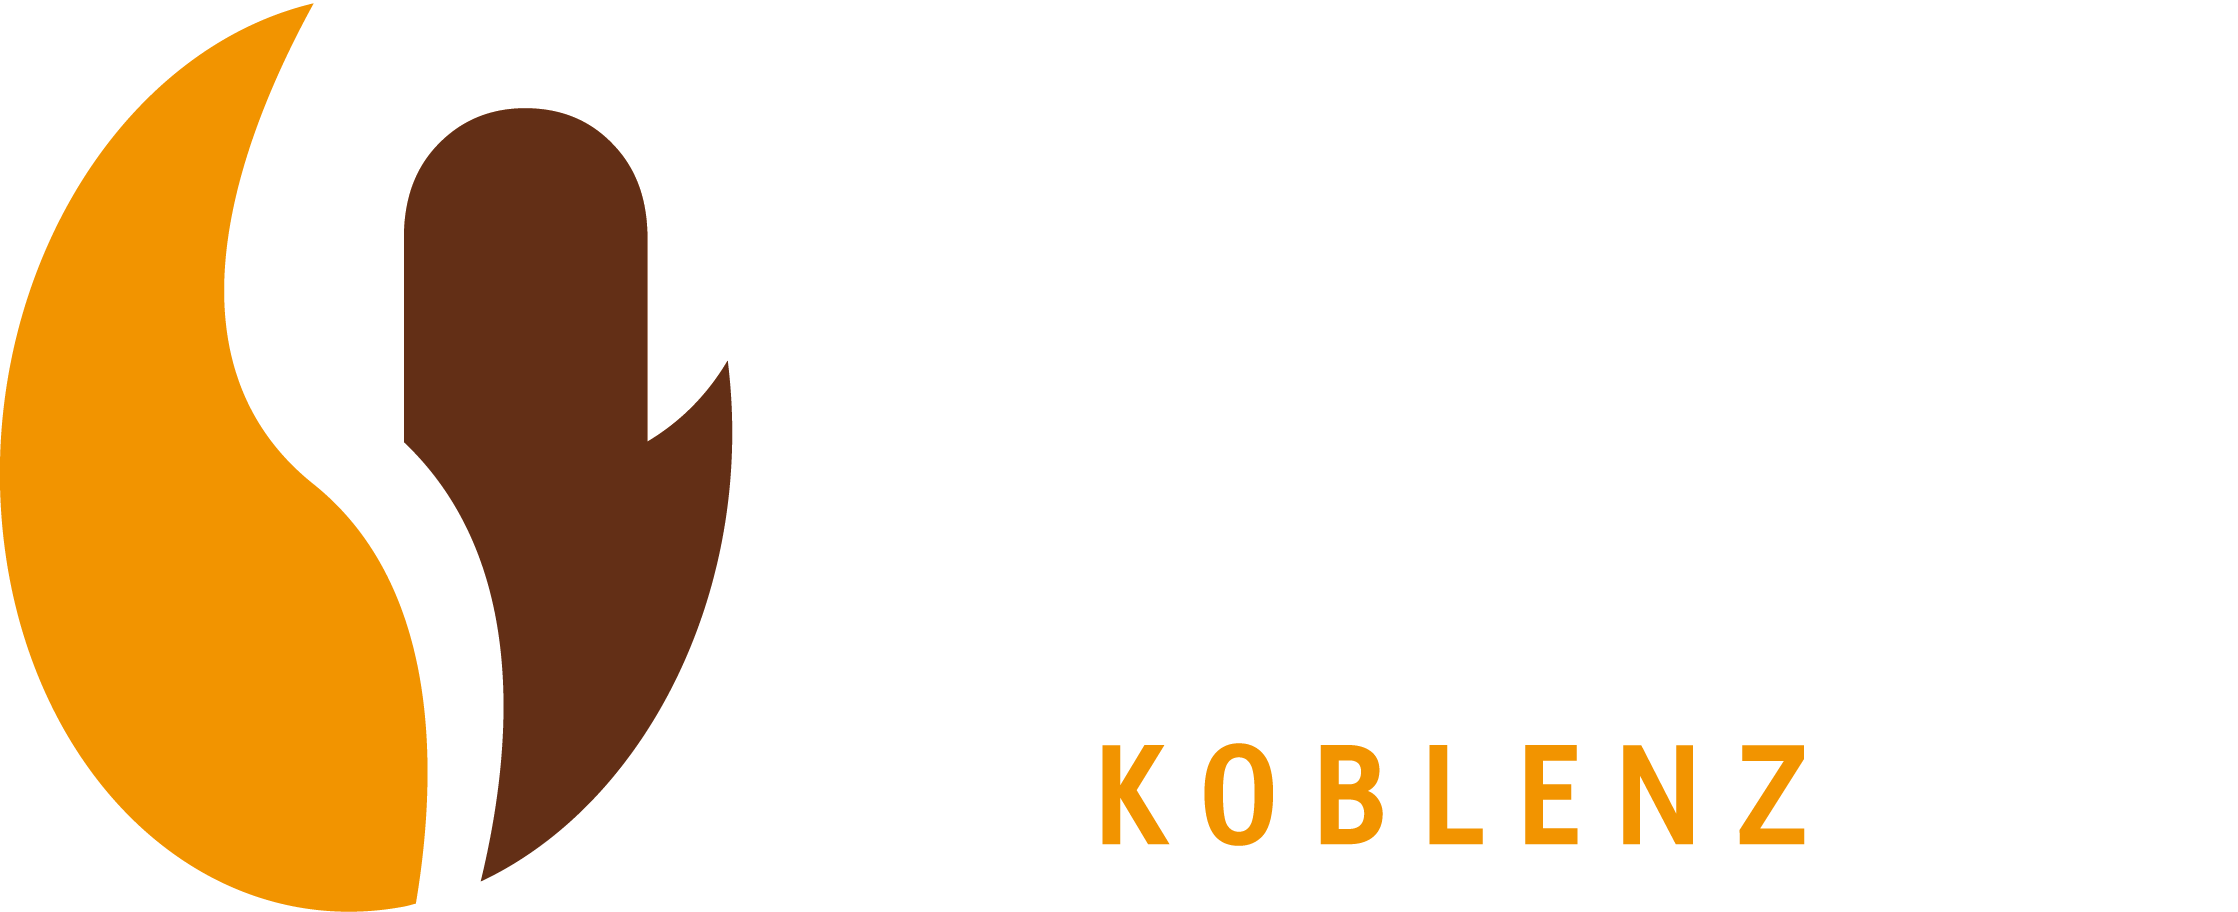 Logo Kaffeerösterei Nero